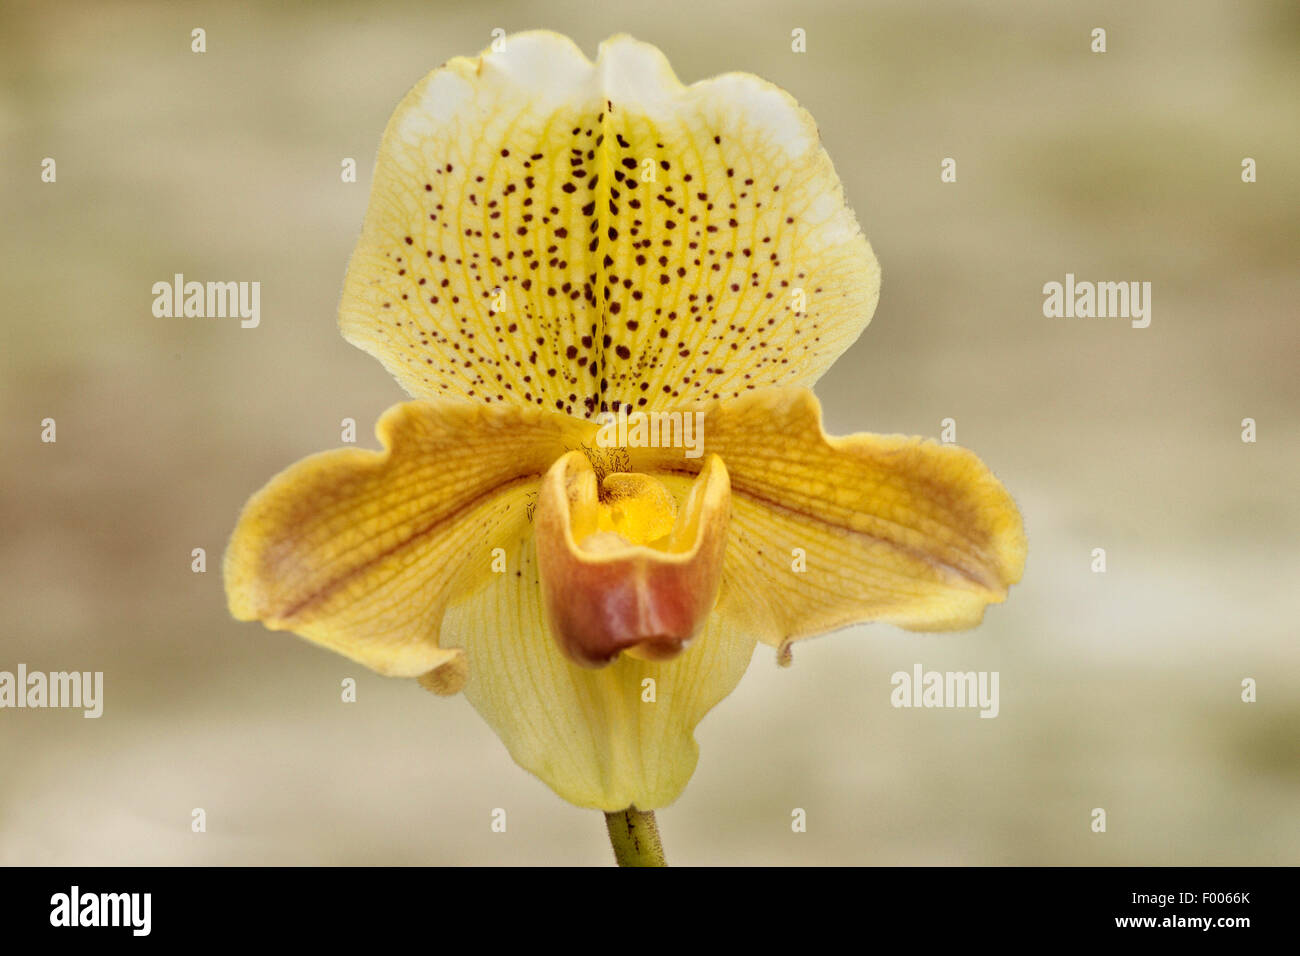 Paphiopedilum (Paphiopedilum insigne), flower Stock Photo